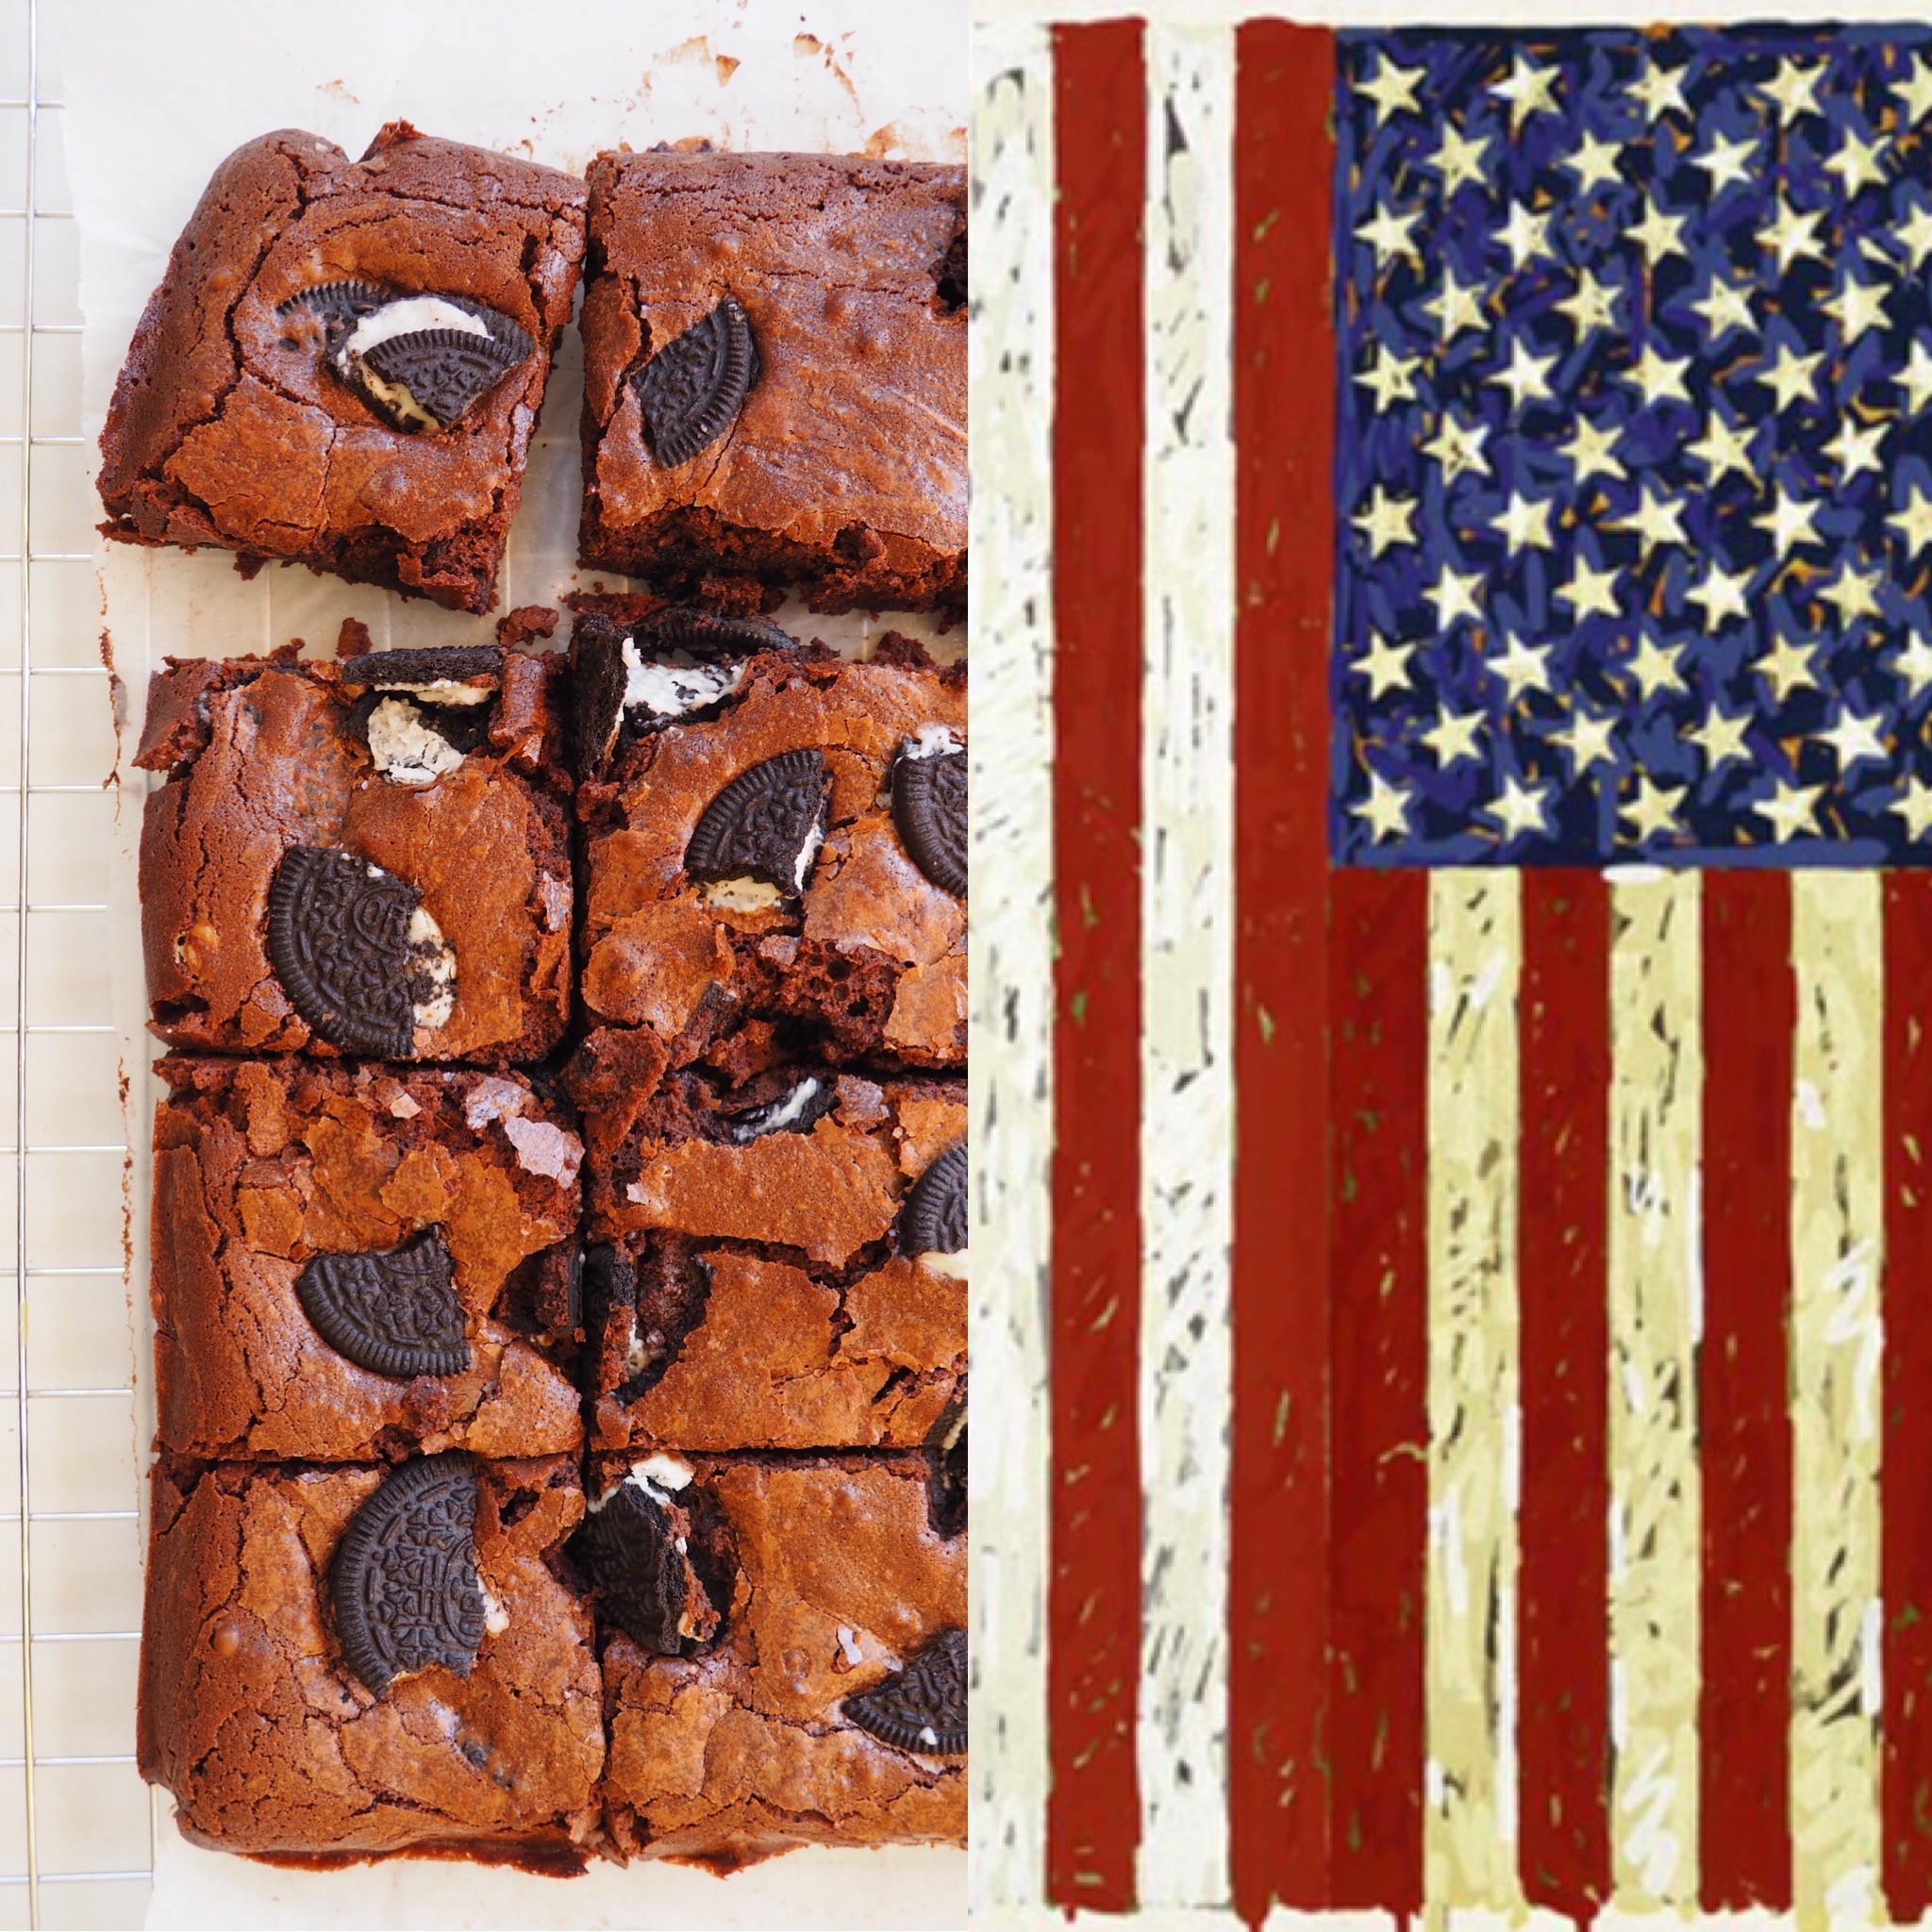 Jasper Johns, les banderes i el brownie d’Oreo